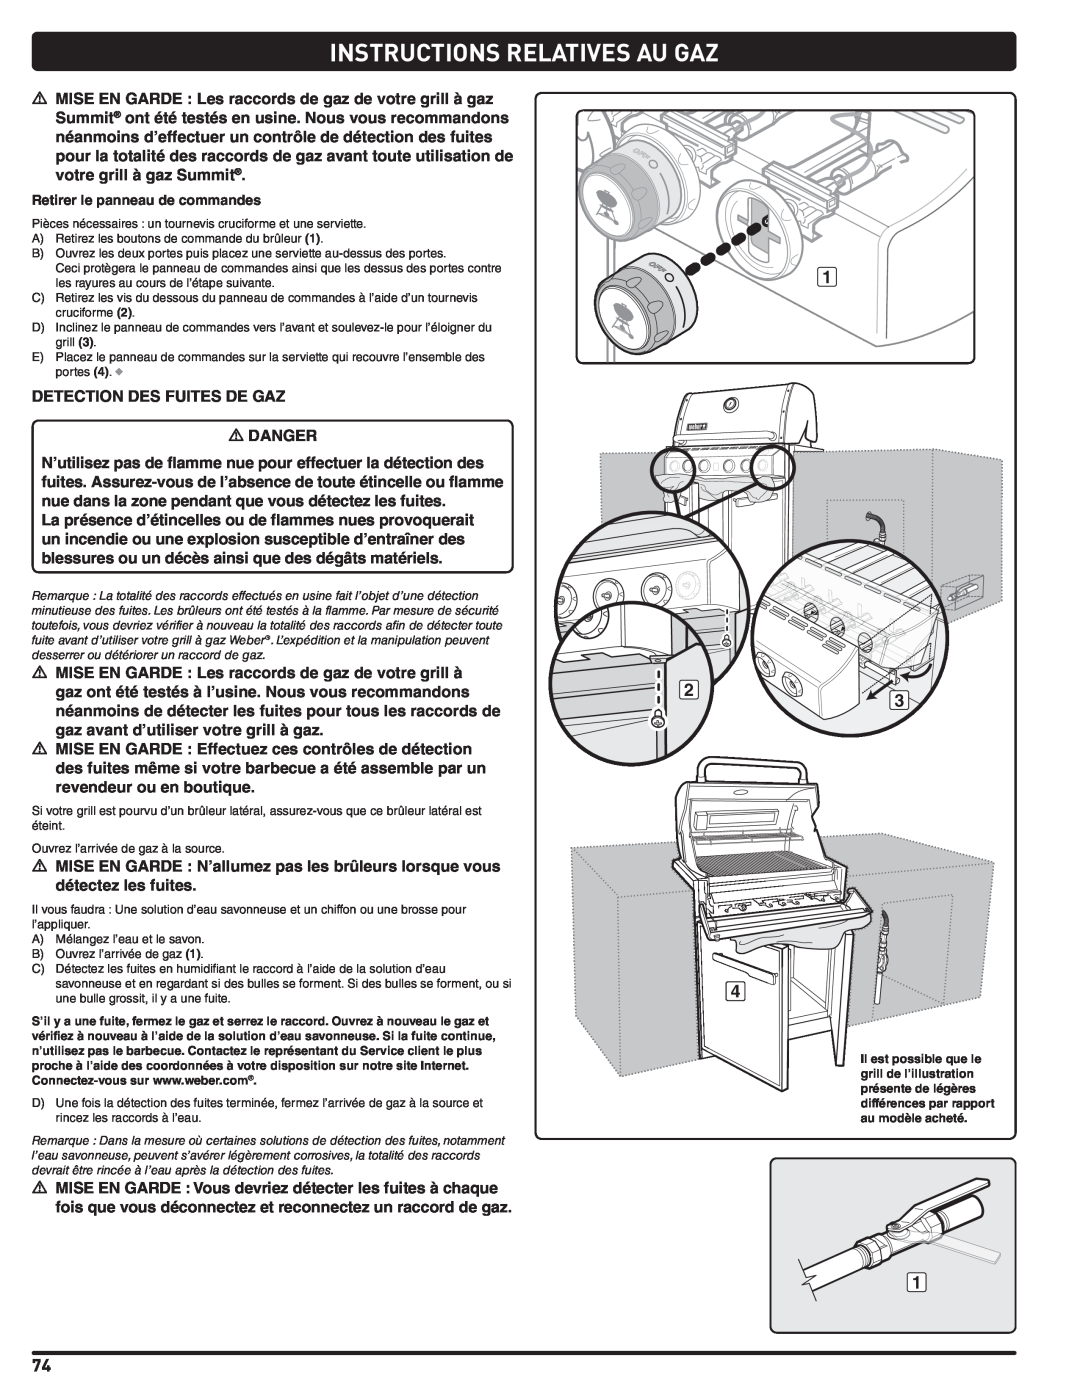 Weber Summit Gas Grill, 56576 manual Instructions Relatives Au Gaz, DETECTION DES FUITES DE GAZ m DANGER 